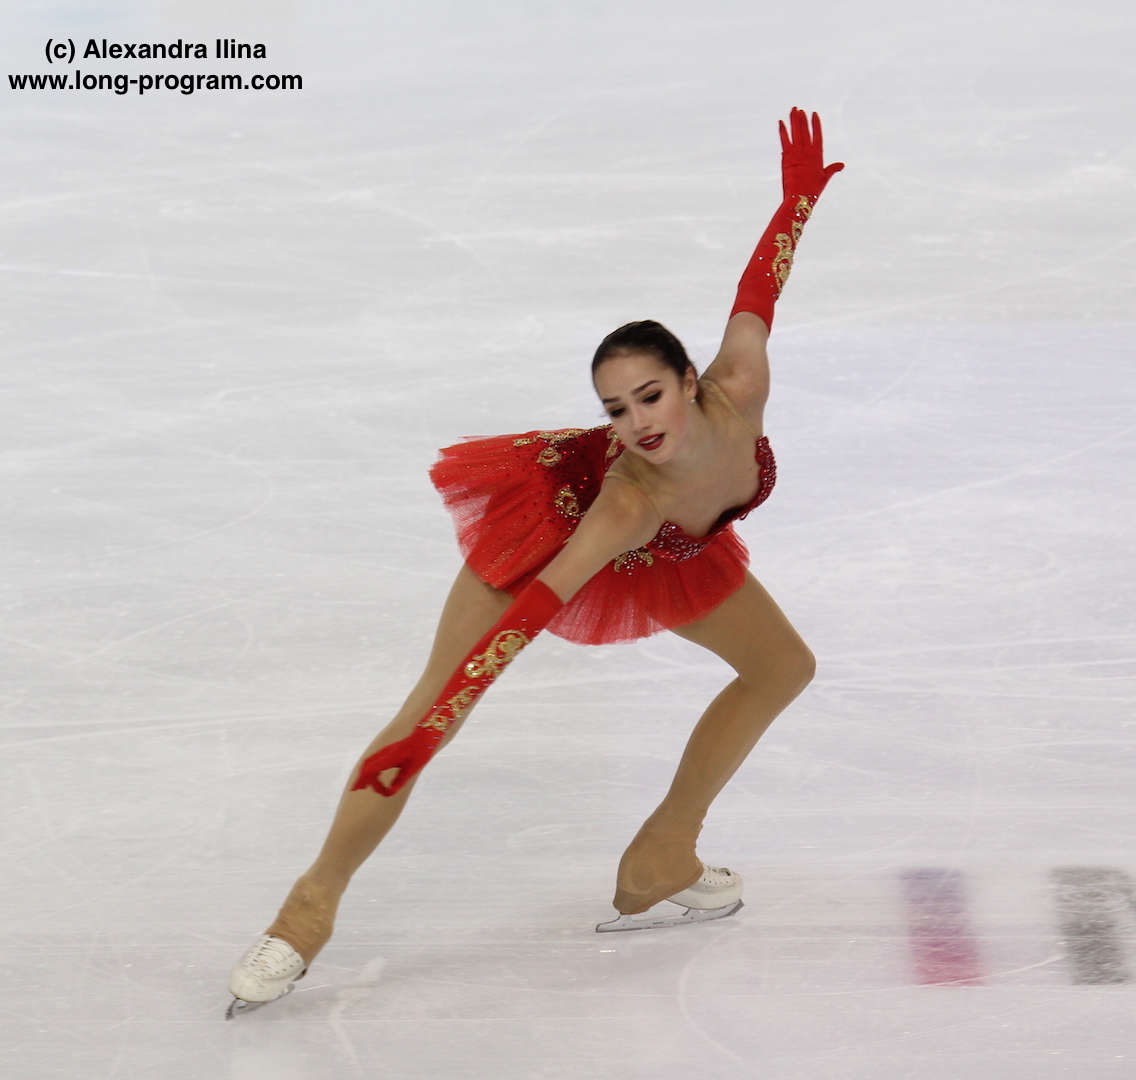 Alina Zagitova ist Olympiasiegerin